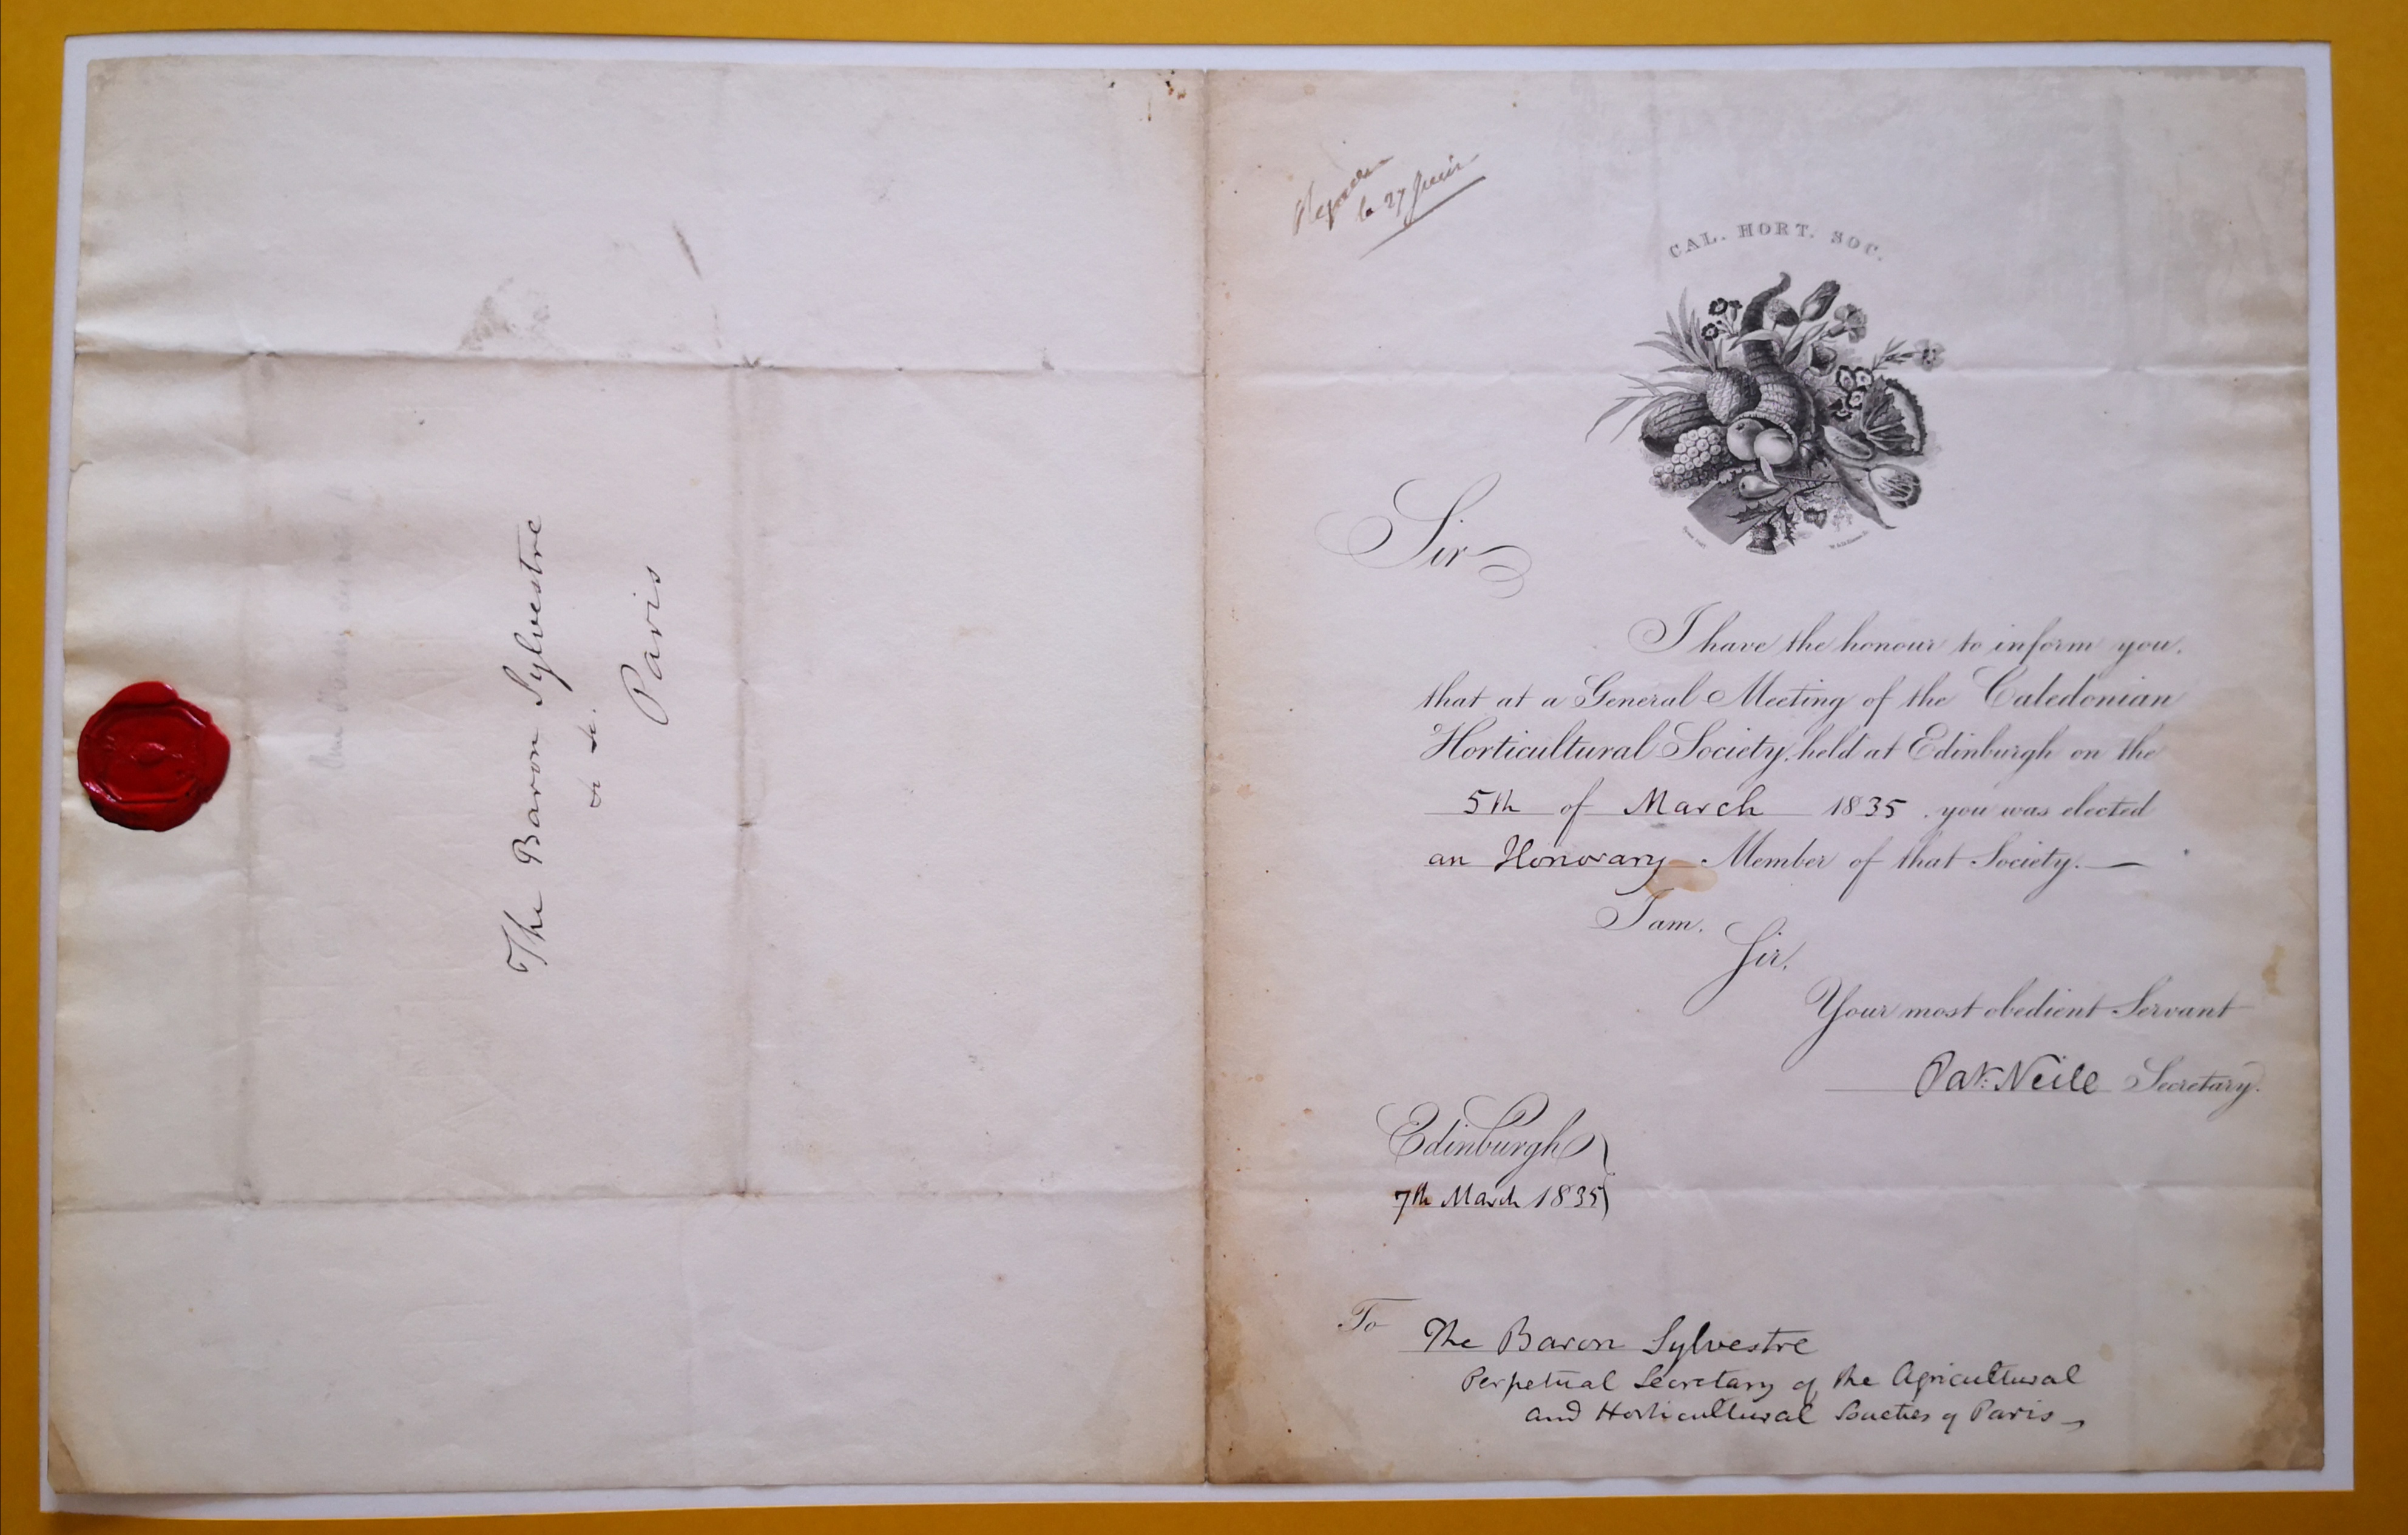  Lettre de membre d'honneur de la Caledonian Horticultural Society - Document 1